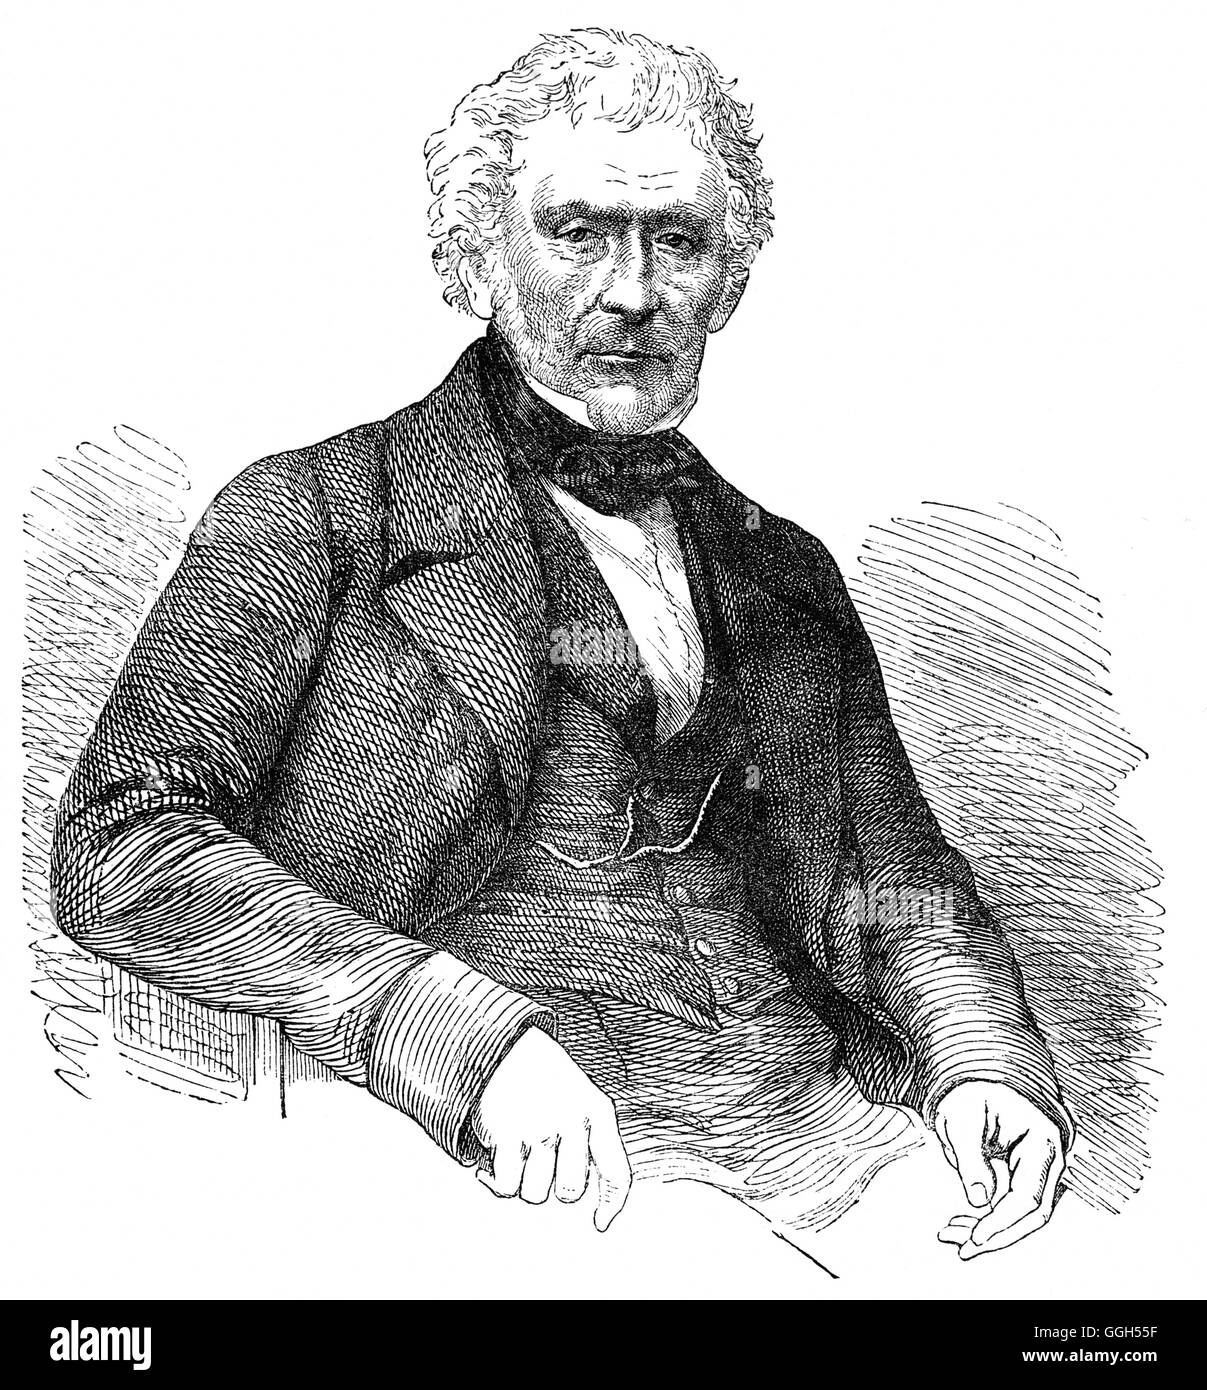 Sir David Brewster (1781 - 1868) fu un fisico scozzese, matematico, astronomo, inventore, scrittore, storico della scienza e università principali. Egli era più noto per i suoi contributi nel campo dell'ottica, ha studiato la doppia rifrazione mediante compressione e scoperto l'effetto fotoelastico,che diede i natali al campo di mineralogia ottica. Foto Stock